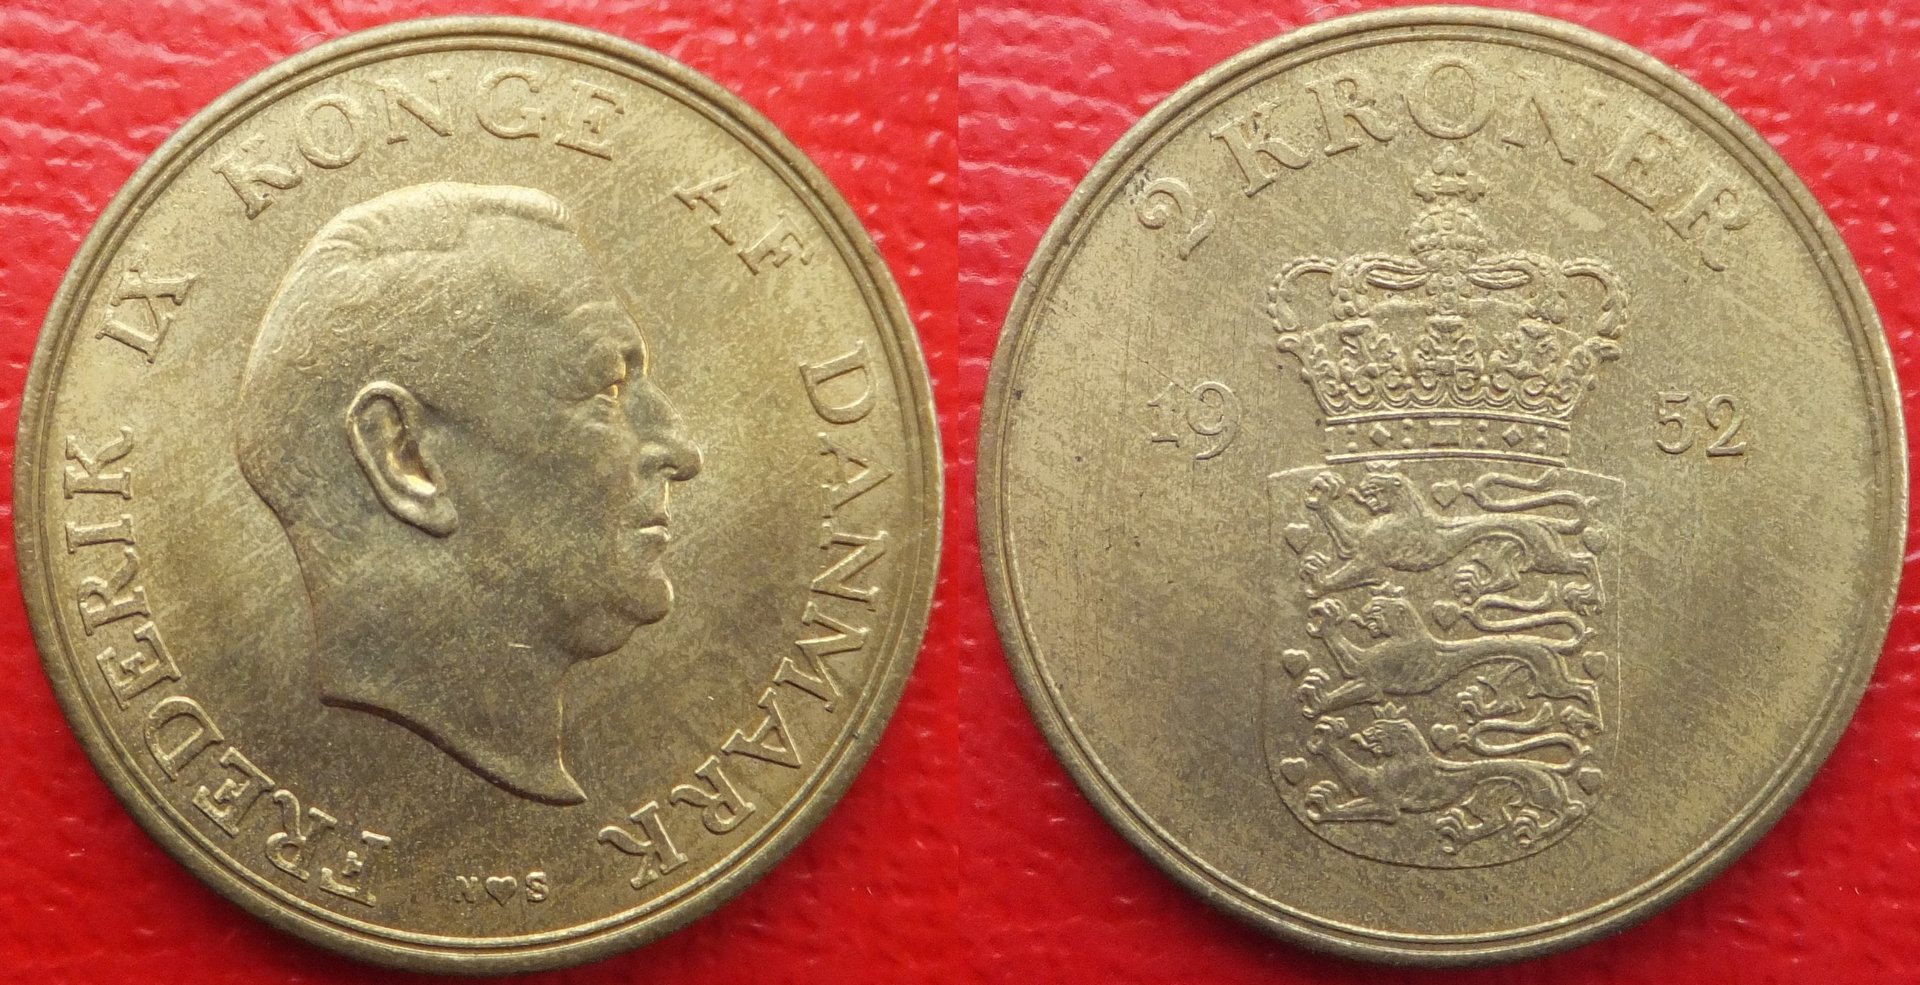 Denmark 2 kroner 1952 (5).jpg